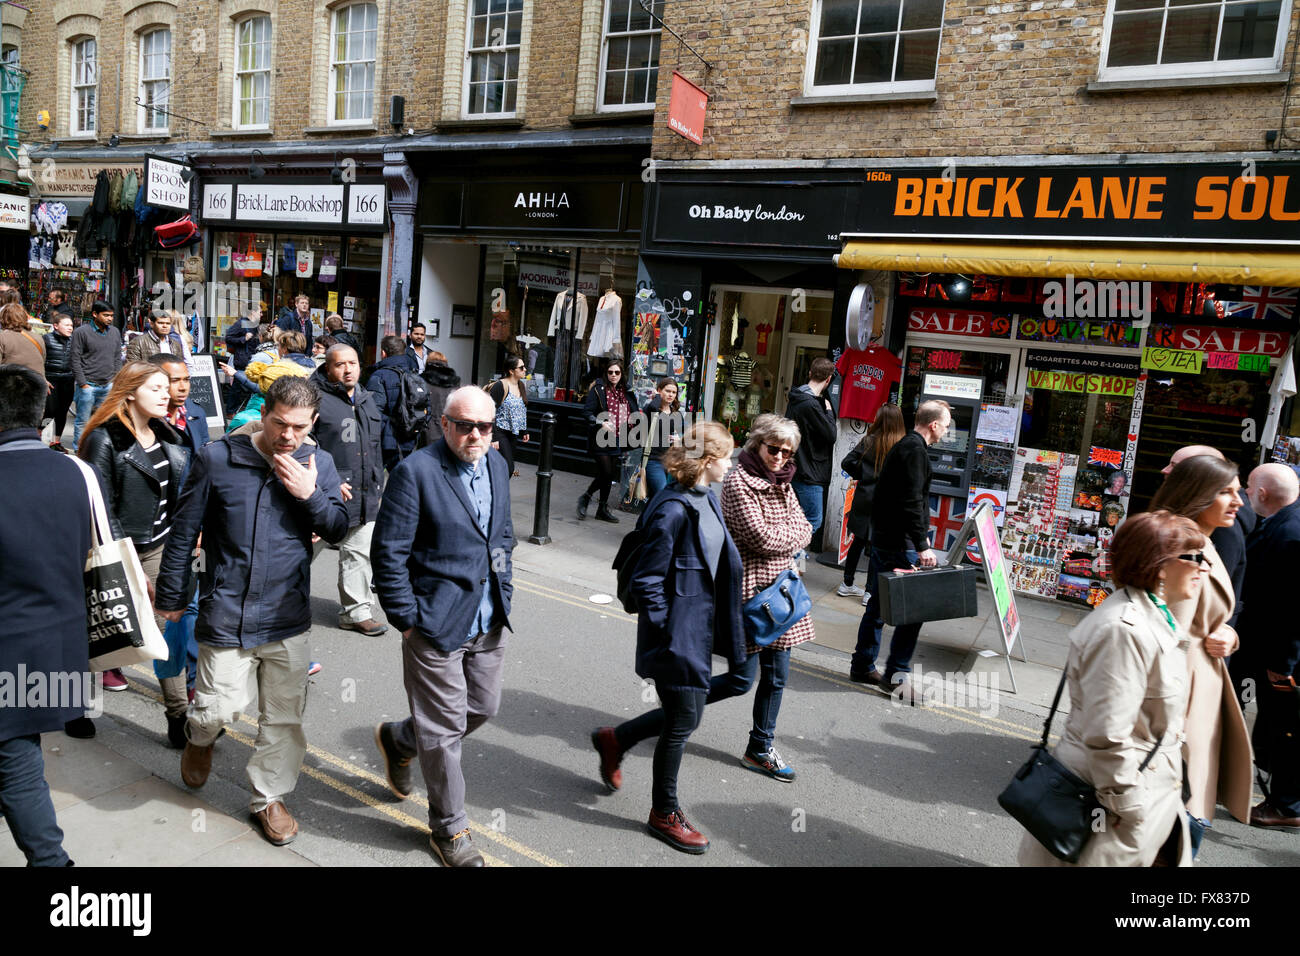 Scena di strada - persone che frequentano il mercato della domenica, Brick Lane, East London, Regno Unito Foto Stock